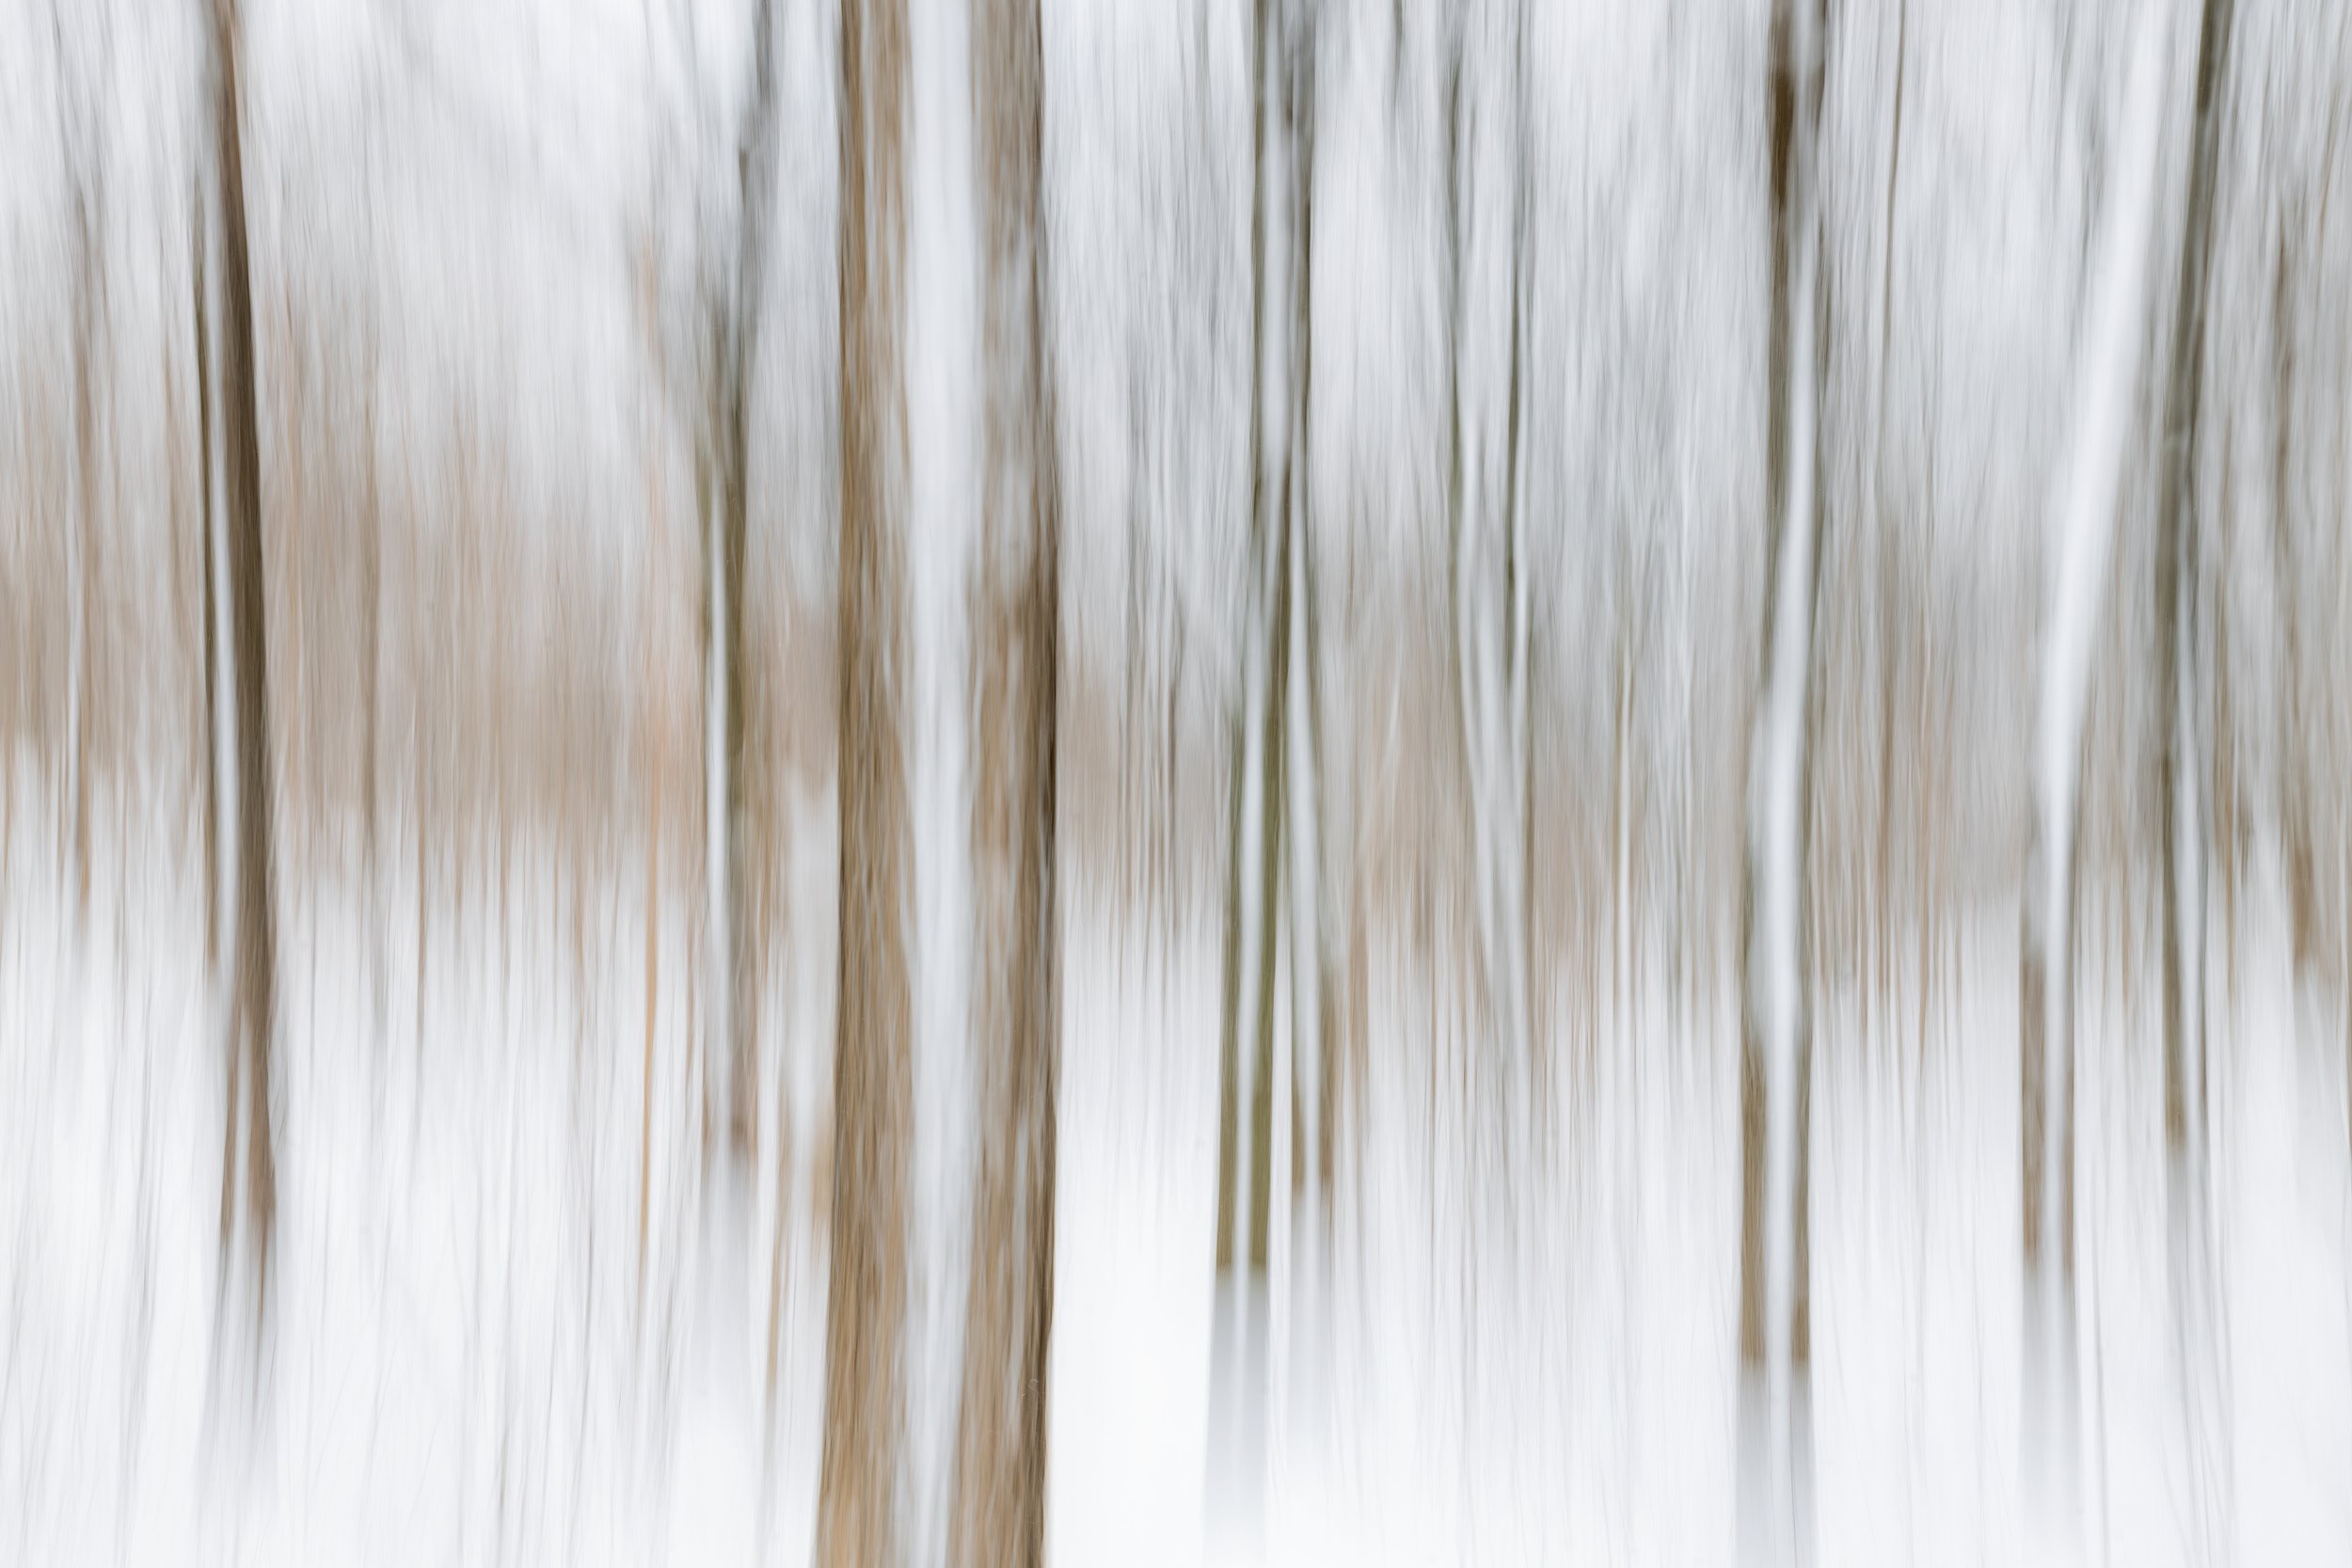 Winter Wood I. Montreal, Quebec (Dec. 2022)